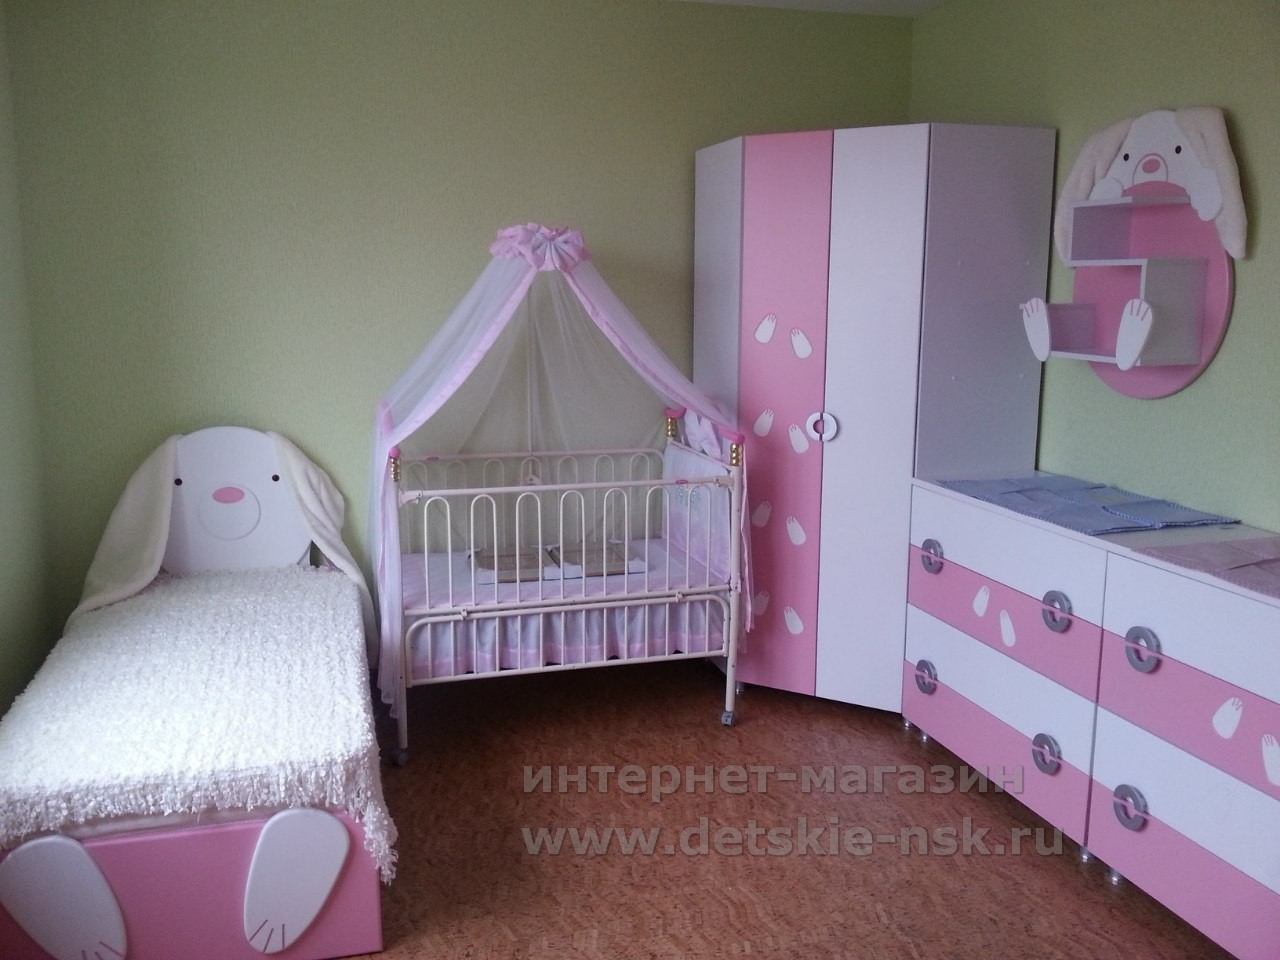 Детская мебель для девочки "Зайка" в реальном интерьере (фото из портфолио интернет-магазина Детские-НСК)  детская мебель для девочки зайка